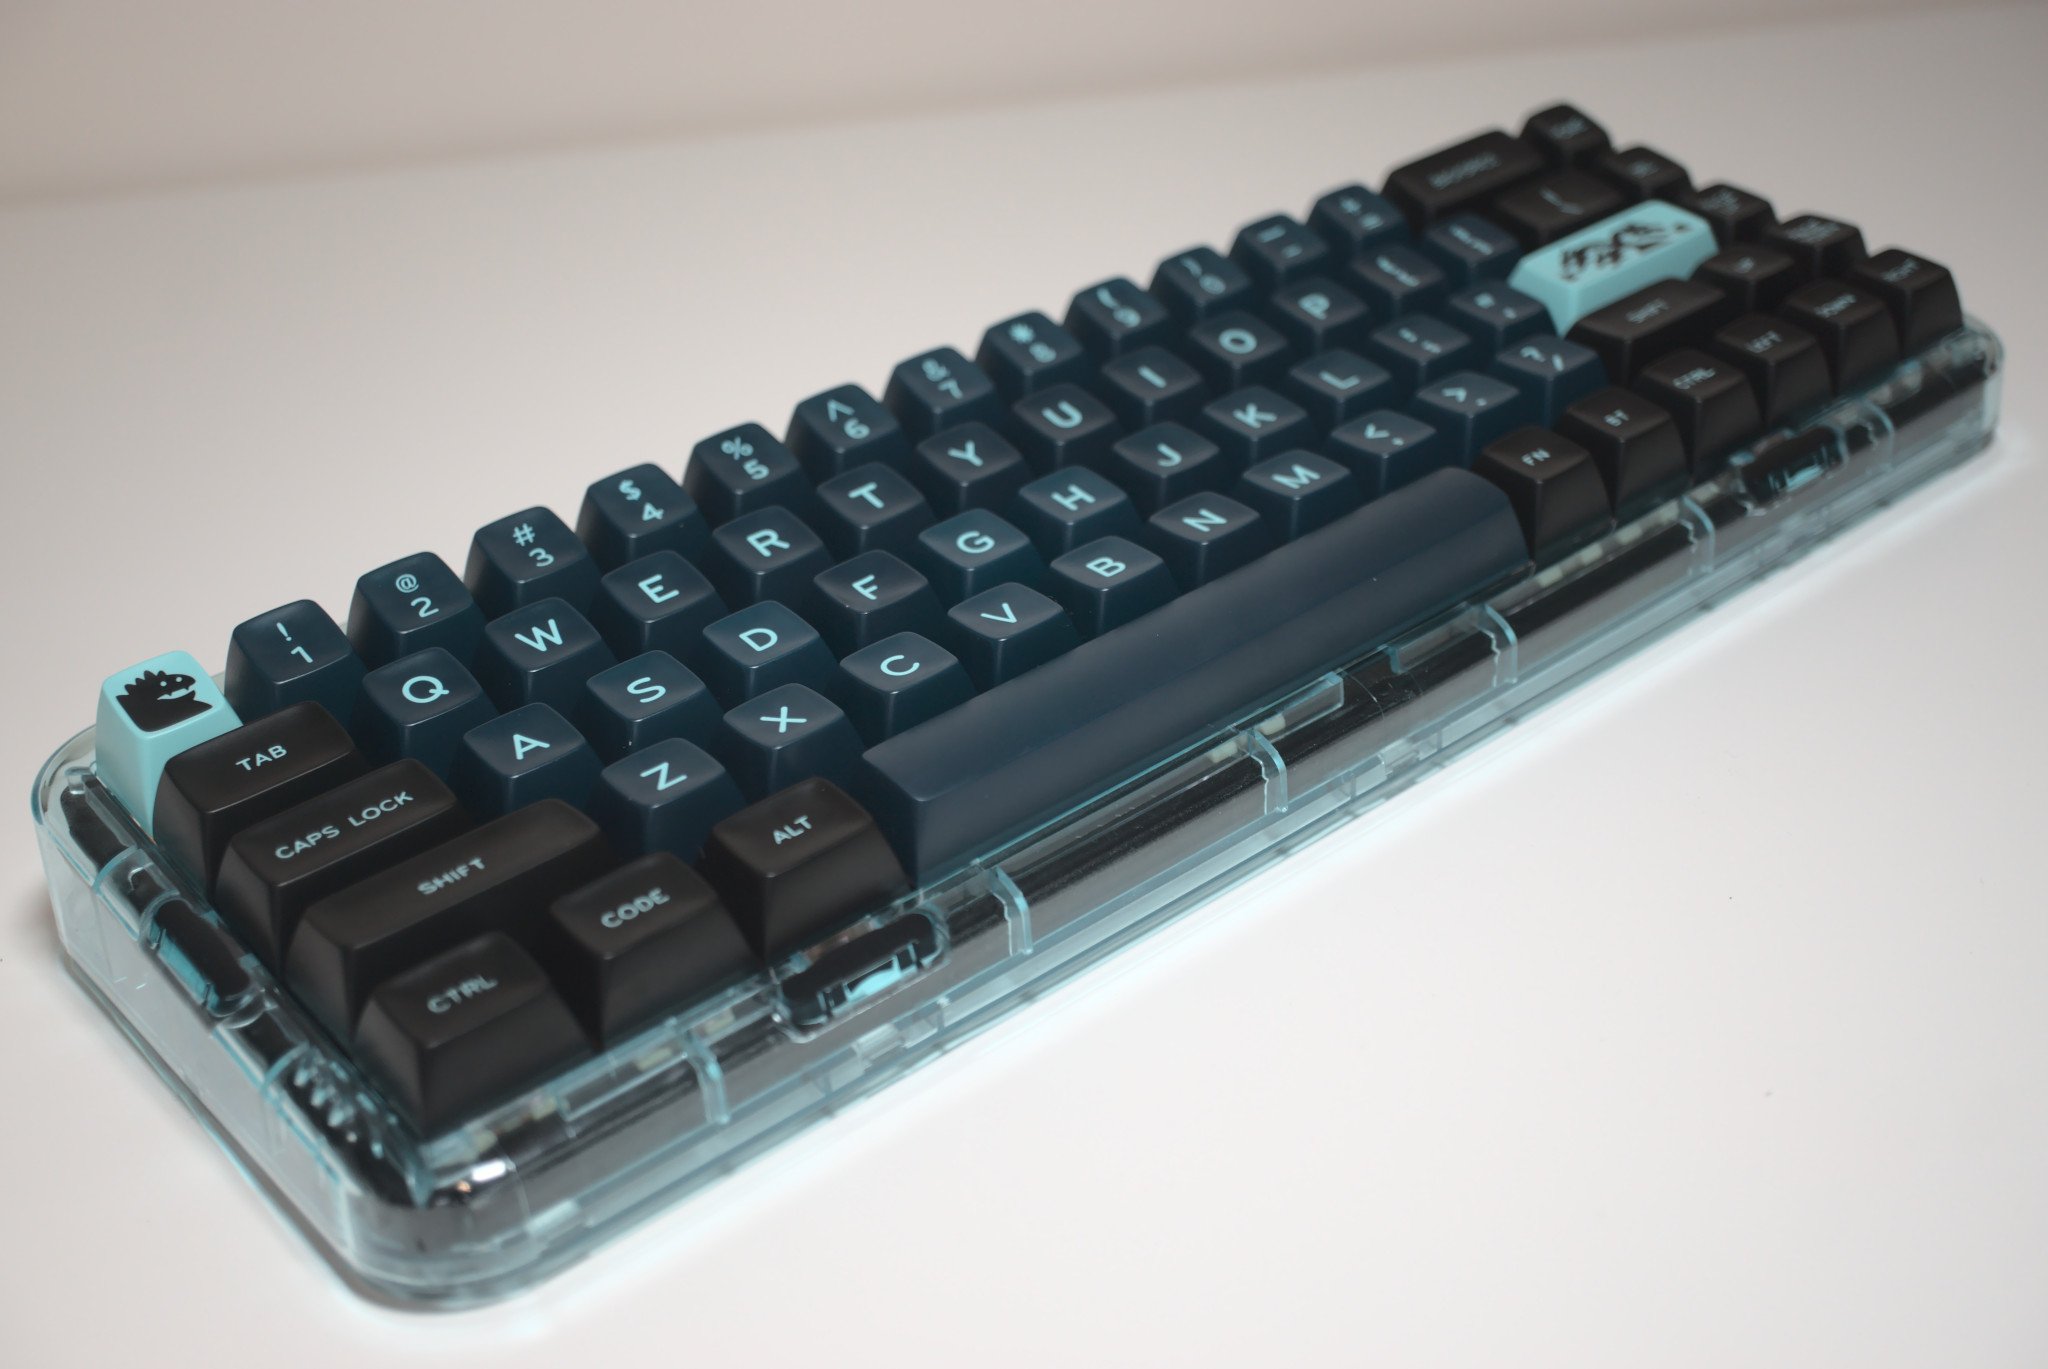 MelGeek Mojo68 review: A great wireless 68% mechanical keyboard